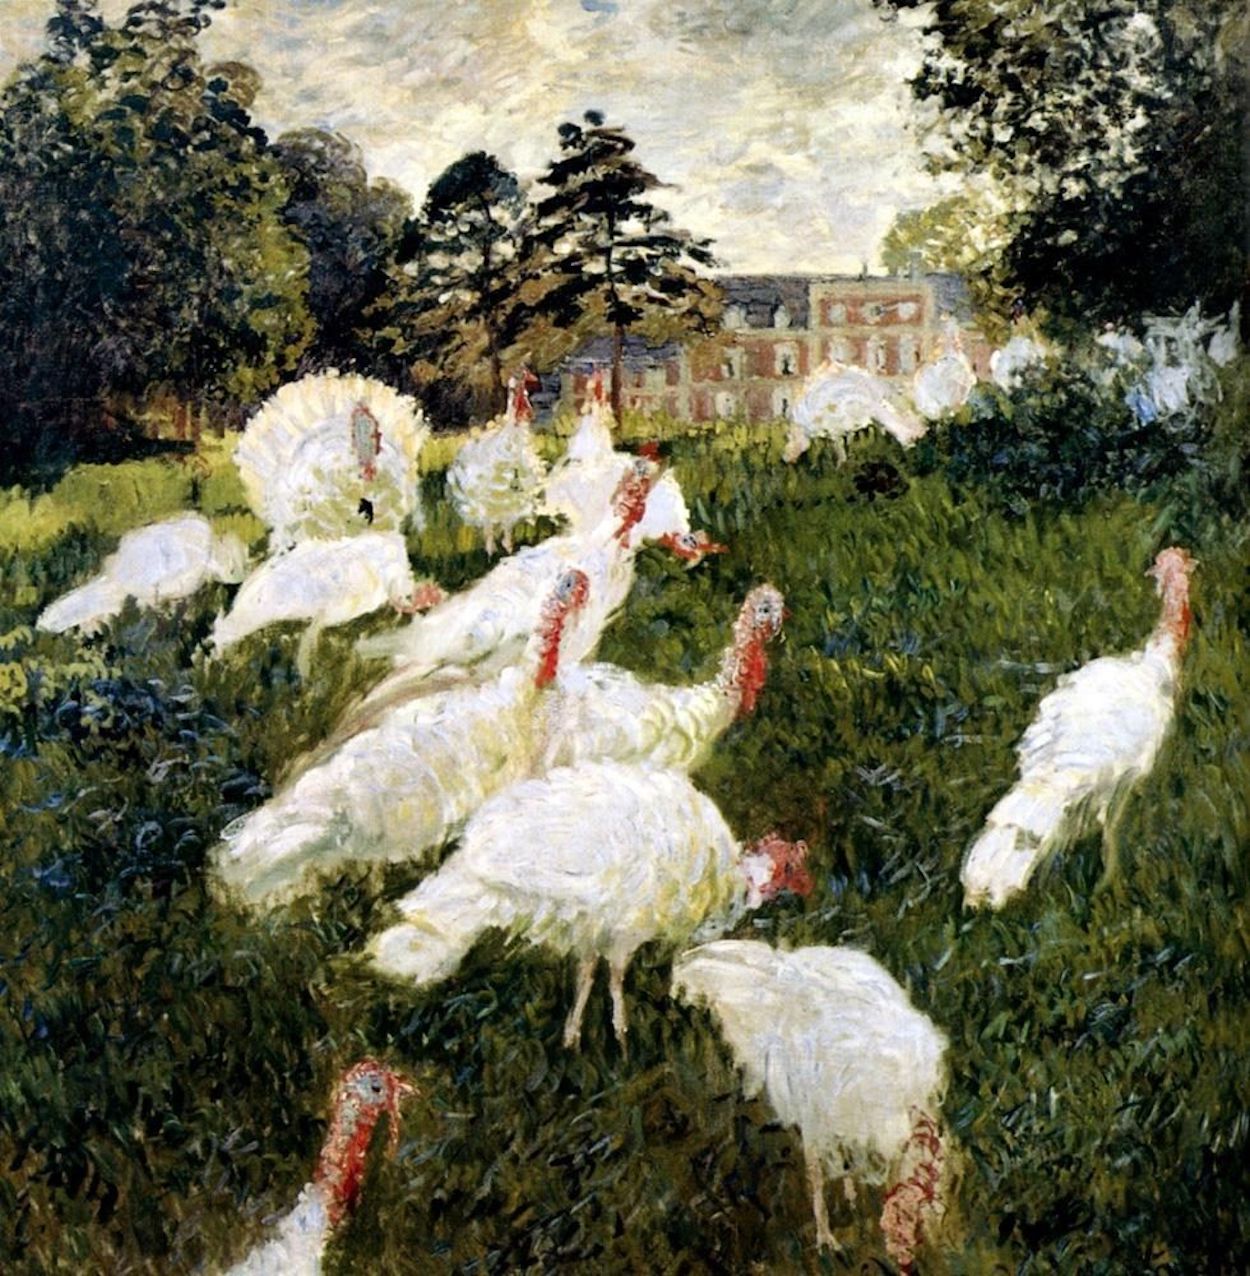 The Turkeys by Claude Monet - 1876 - 174 x 172cm Musée d'Orsay